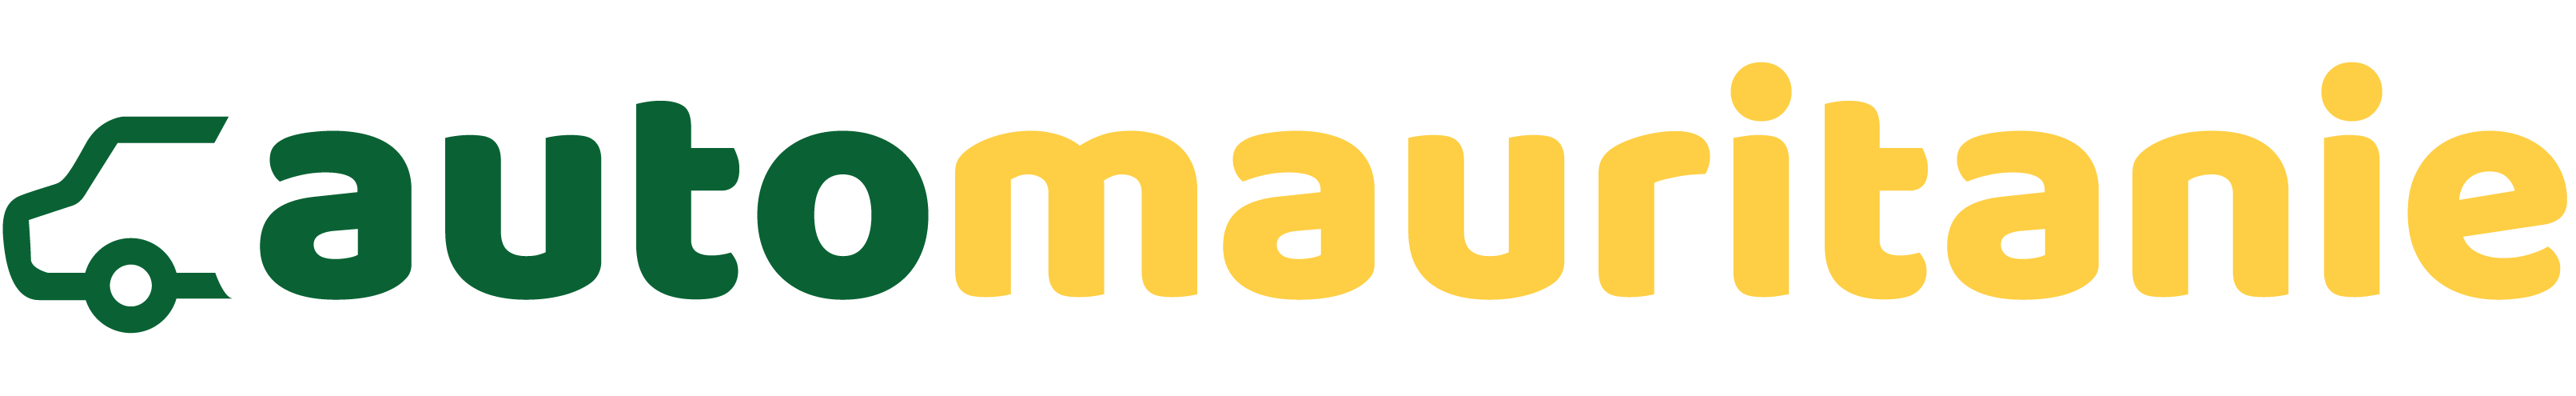 Automauritanie logo